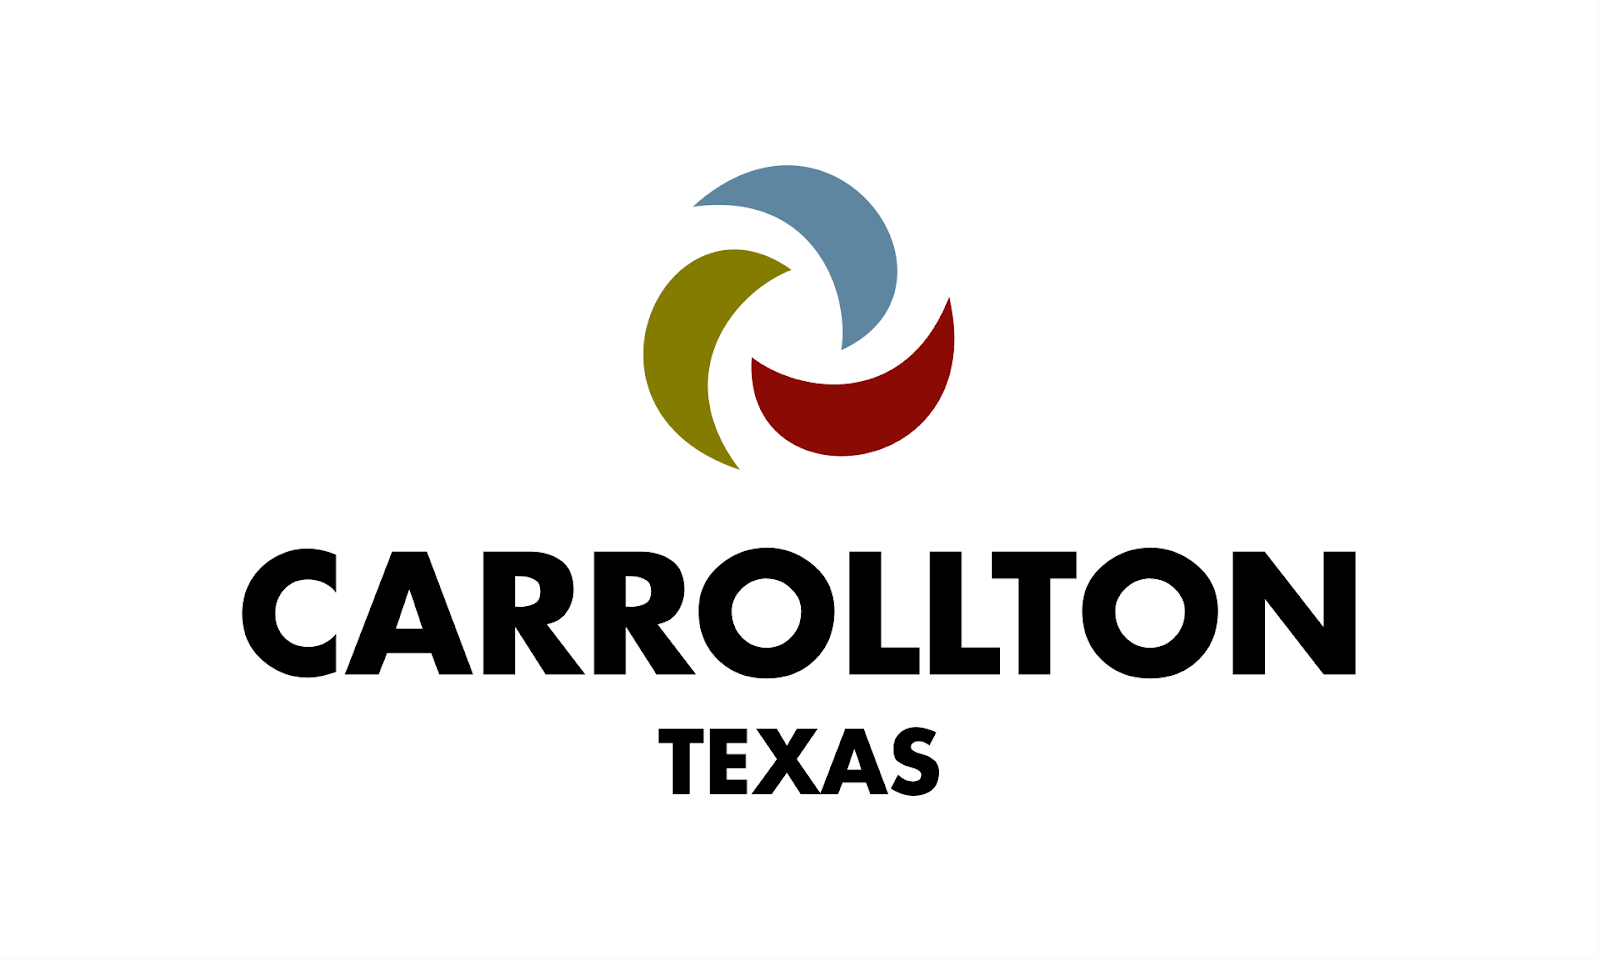  AC repair Carrollton, Carrollton HVAC service, Carrollton plumber, Heat Pump service Carrollton